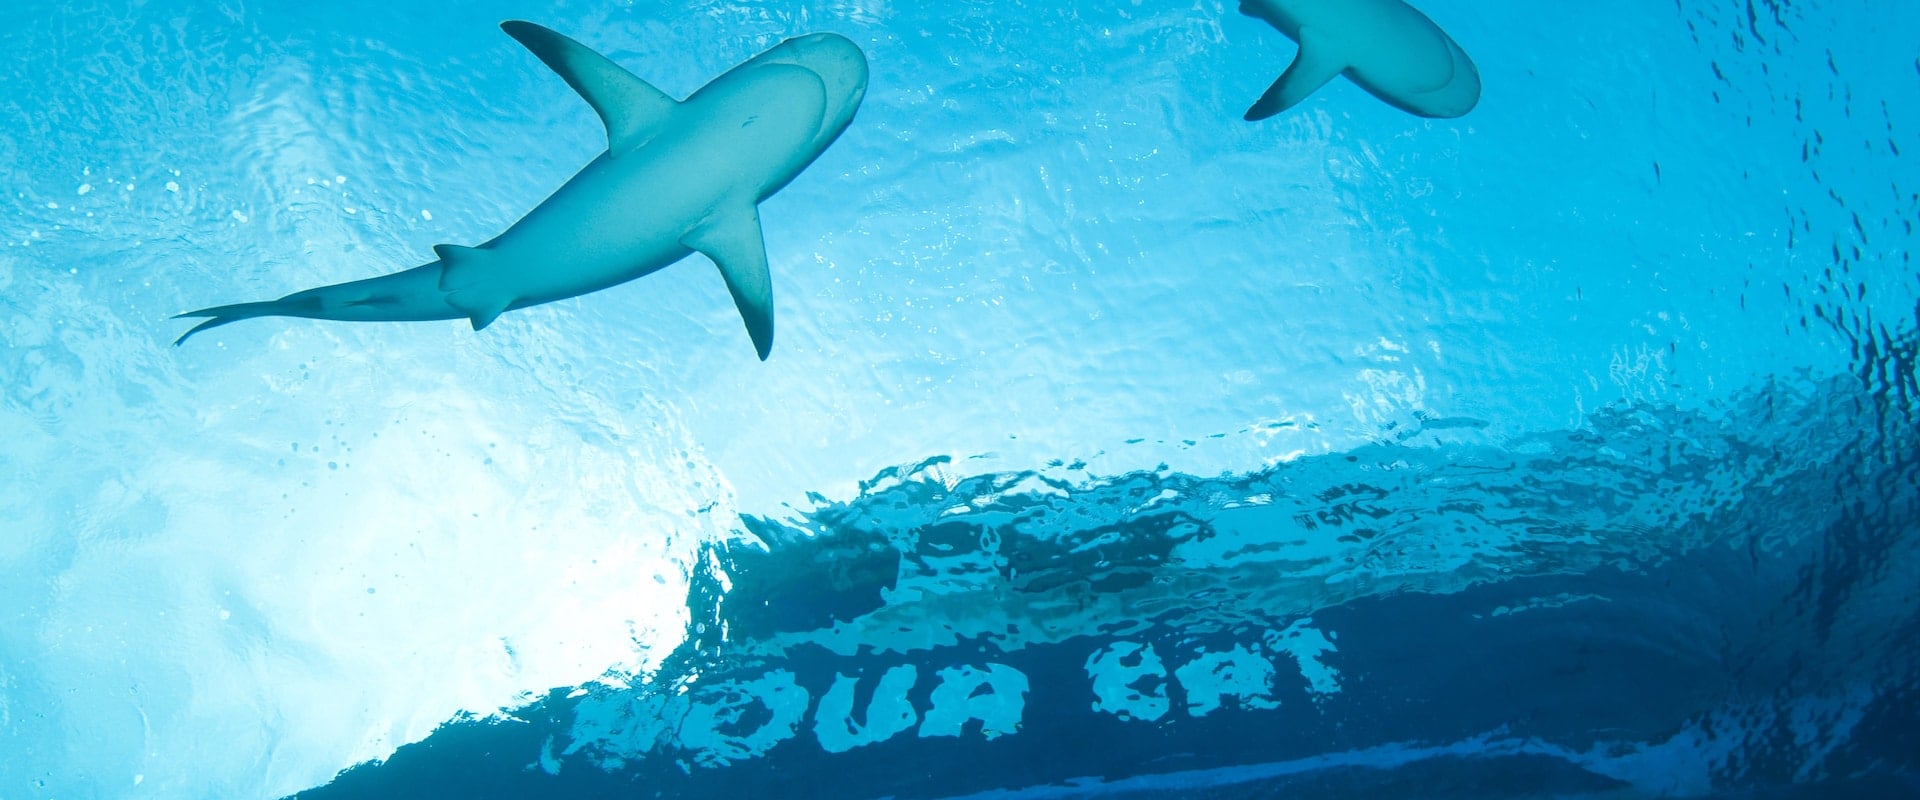 7 Crociere subacquee in Bahamas - LiveAboard.com